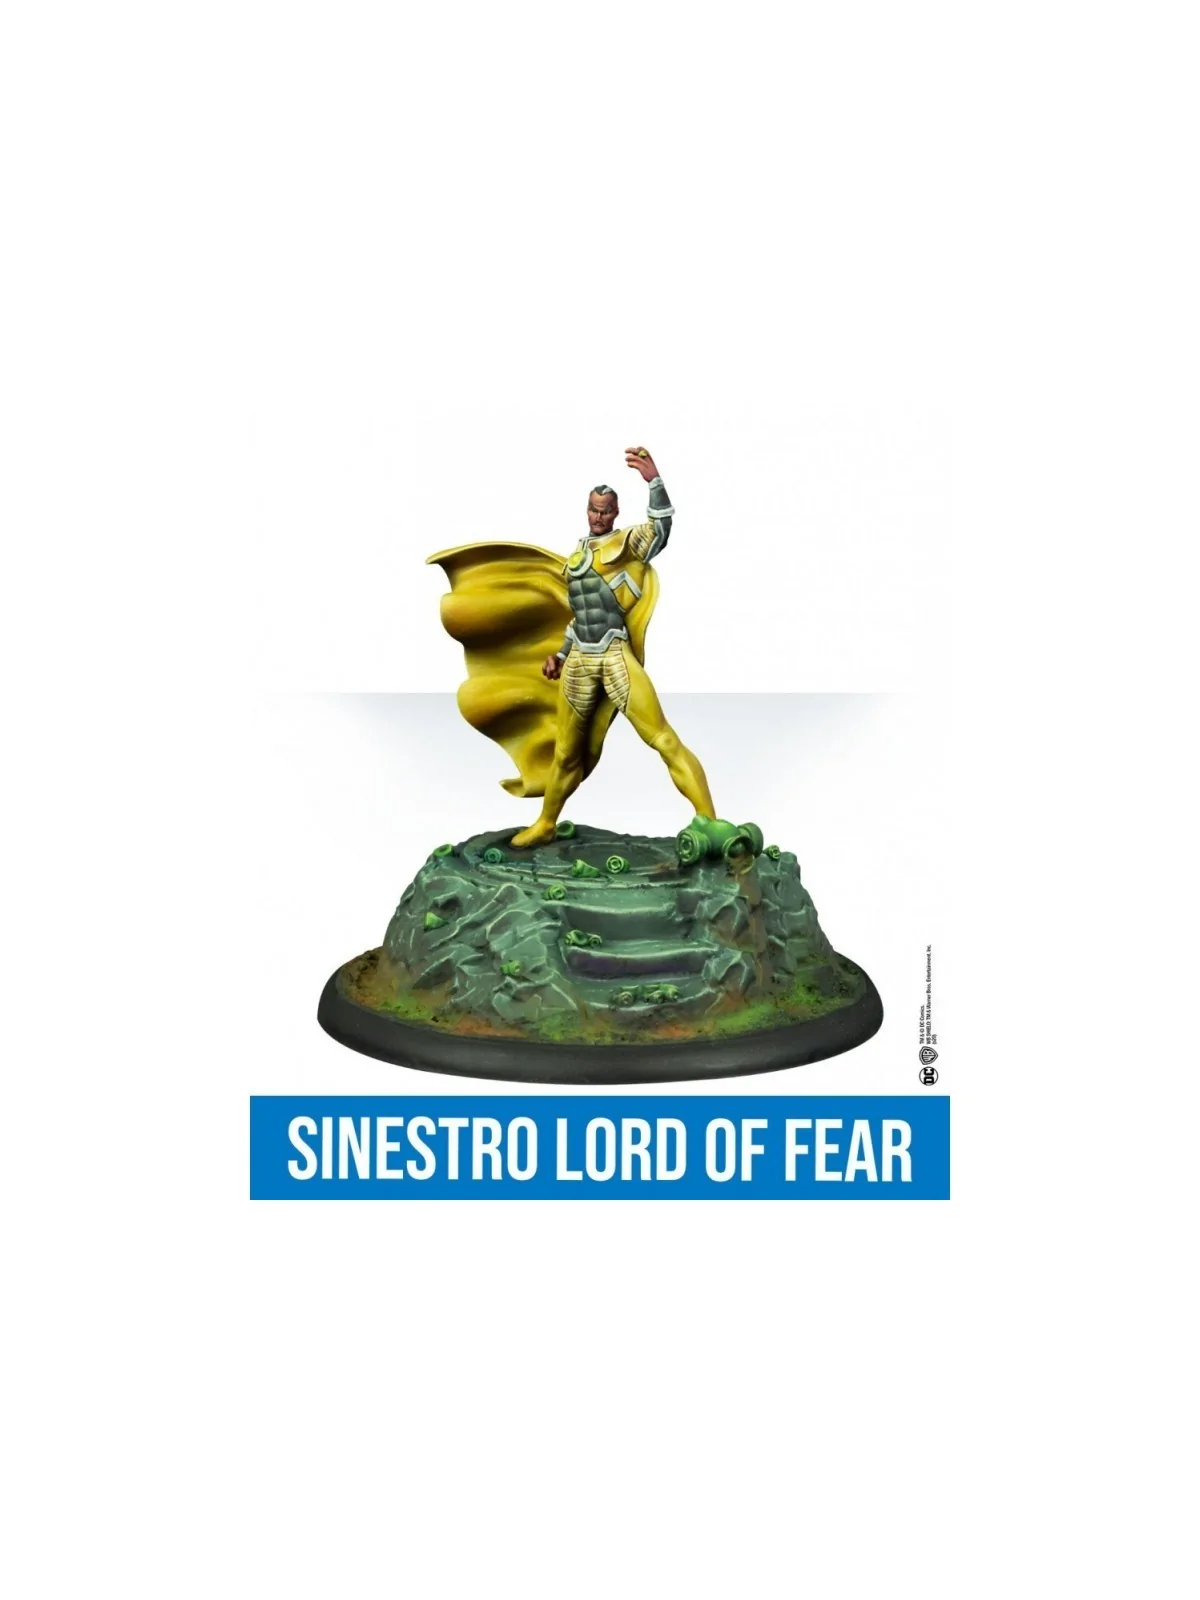 Comprar DC Universe Miniature Game: Sinestro Lord of Fear barato al me